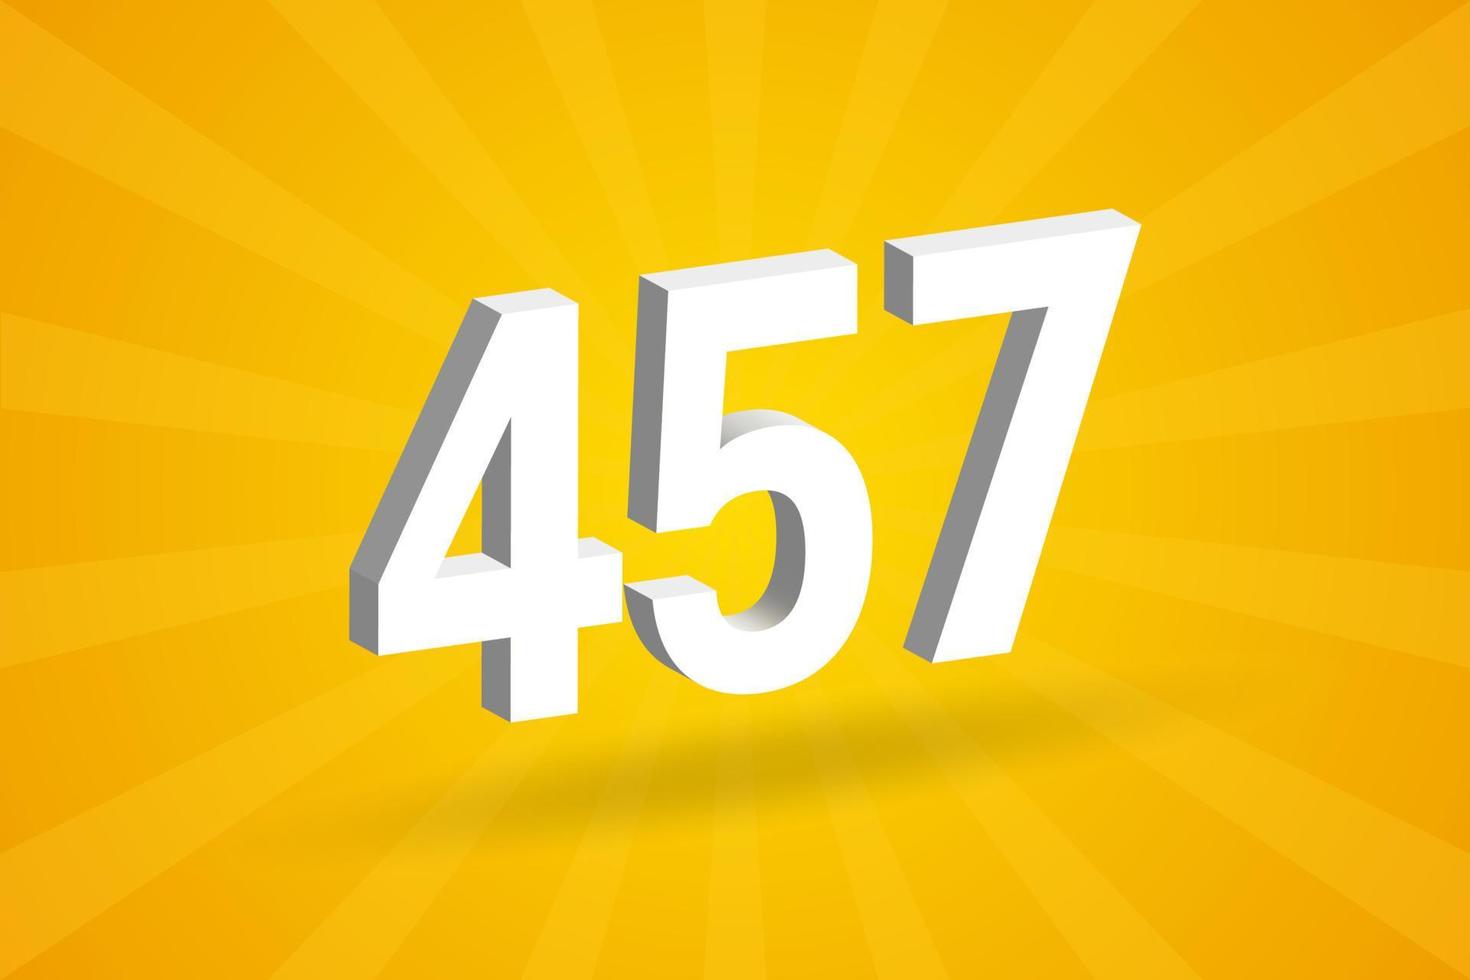 3d 457 aantal doopvont alfabet. wit 3d aantal 457 met geel achtergrond vector